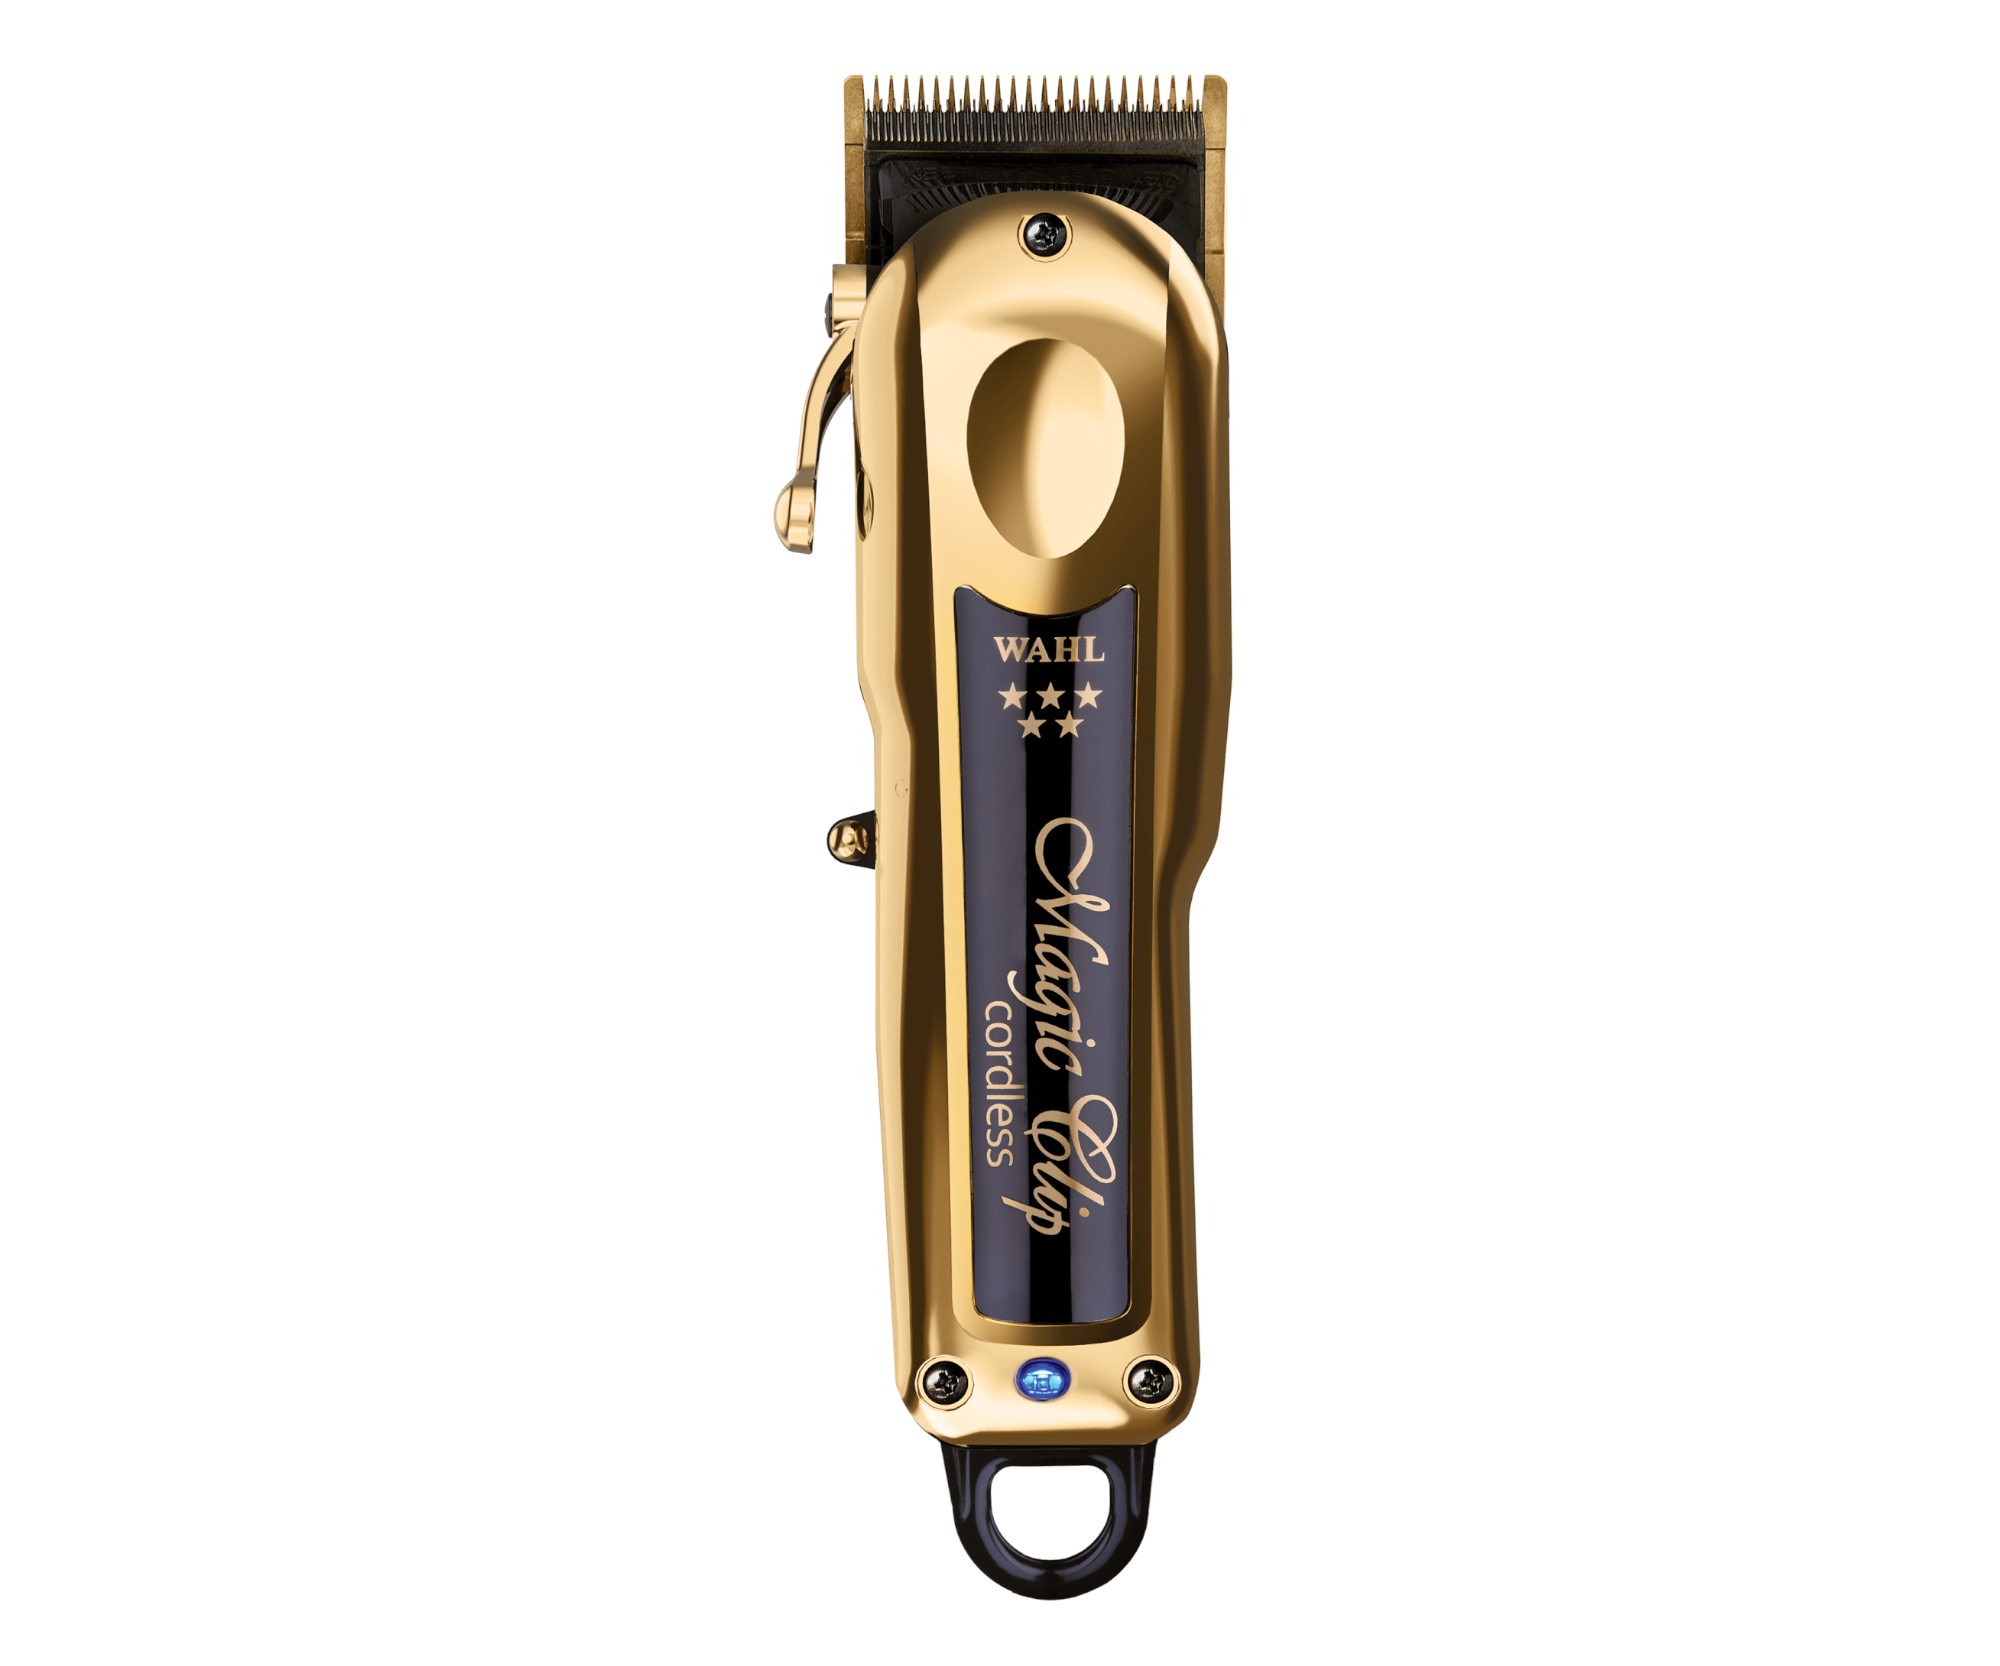 Profesionální strojek na vlasy Wahl Magic Clip Cordless Gold 08148-716 - zlatý + DÁREK ZDARMA